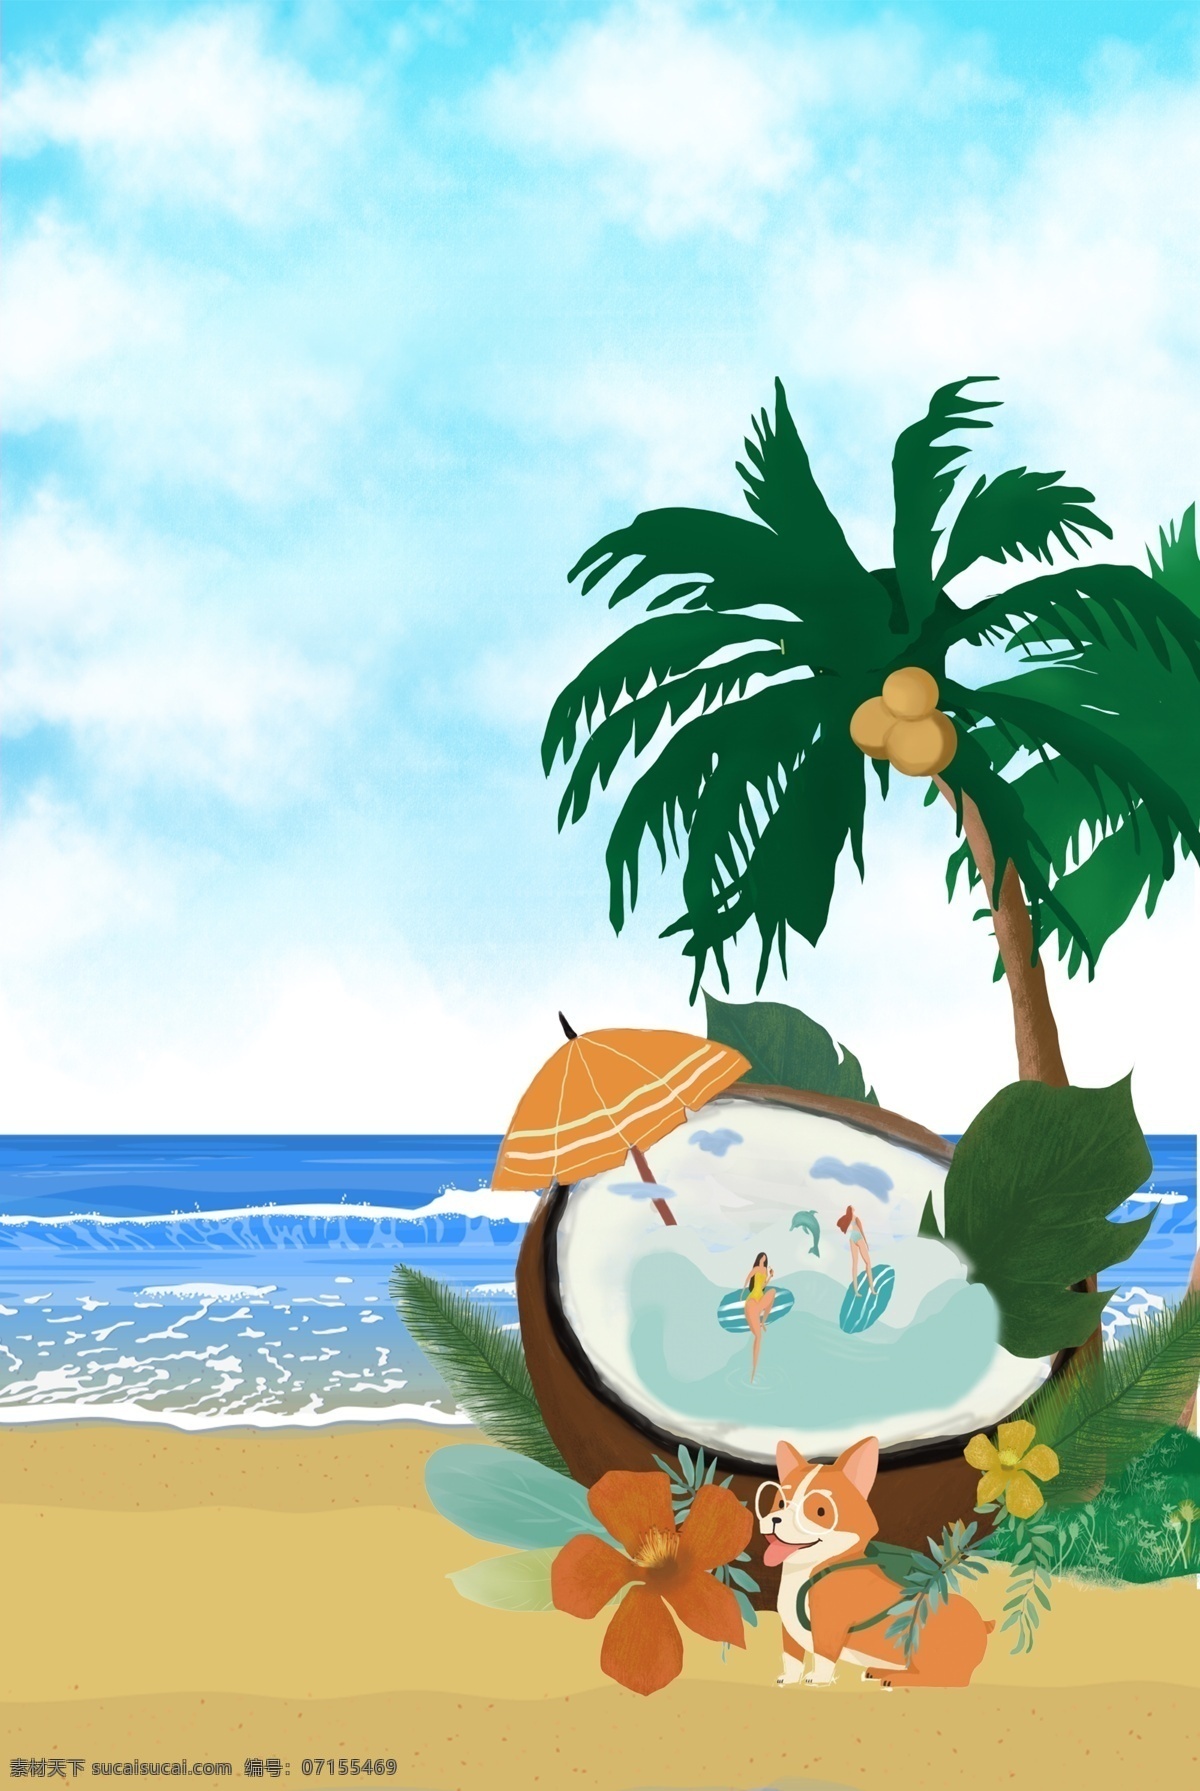 夏季海滩背景 夏天 阳光 沙滩 大海 度假 夏季 海边 遮阳伞 海景